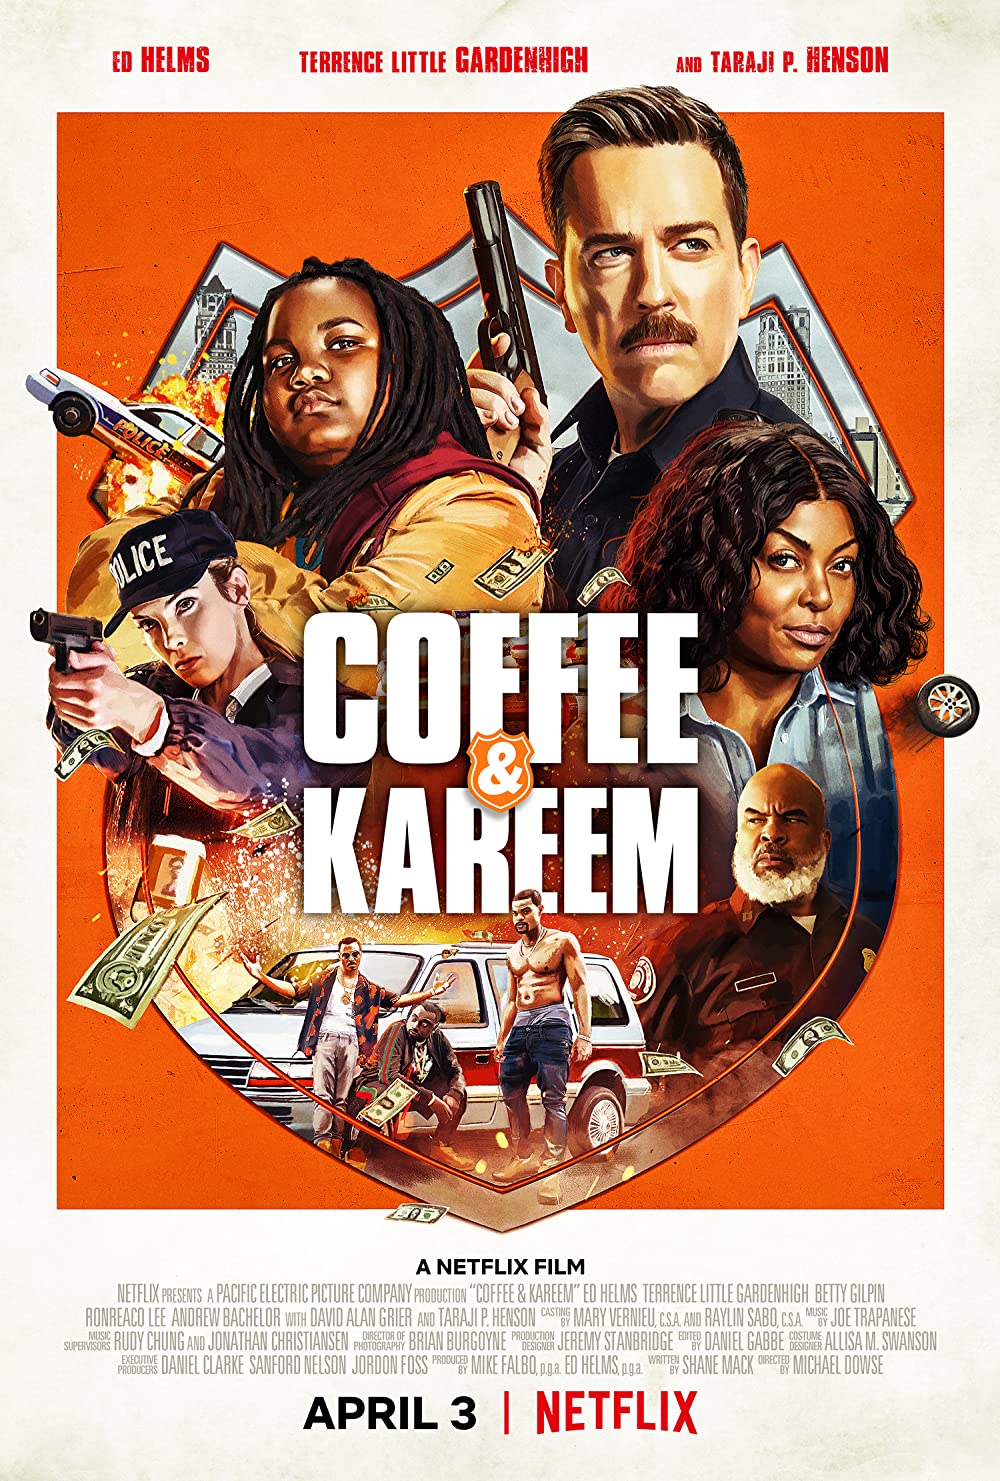 Filmbeschreibung zu Coffee & Kareem